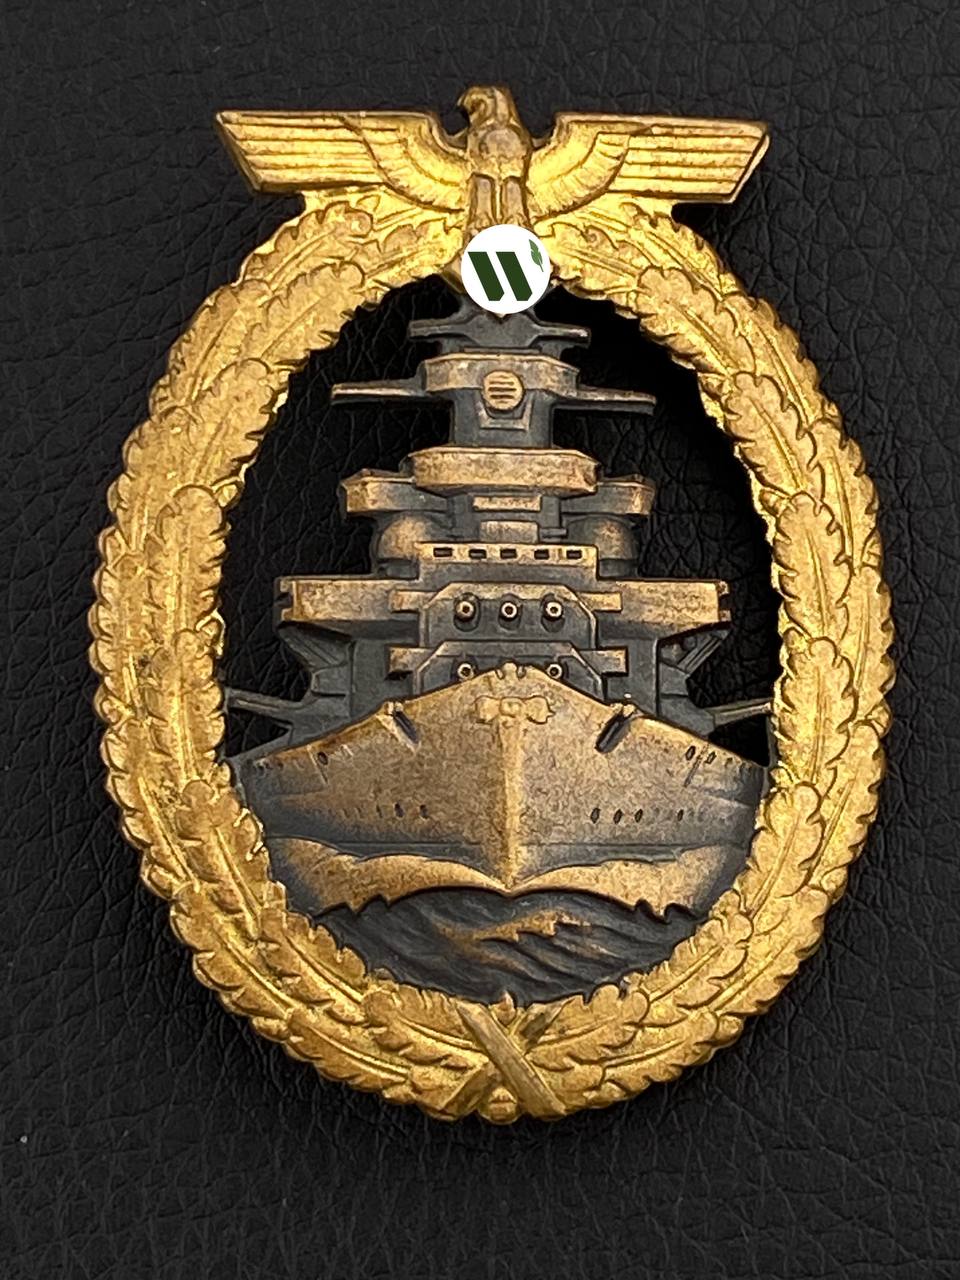 Квалификационный знак экипажа линейного корабля или крейсера от Алексея С.